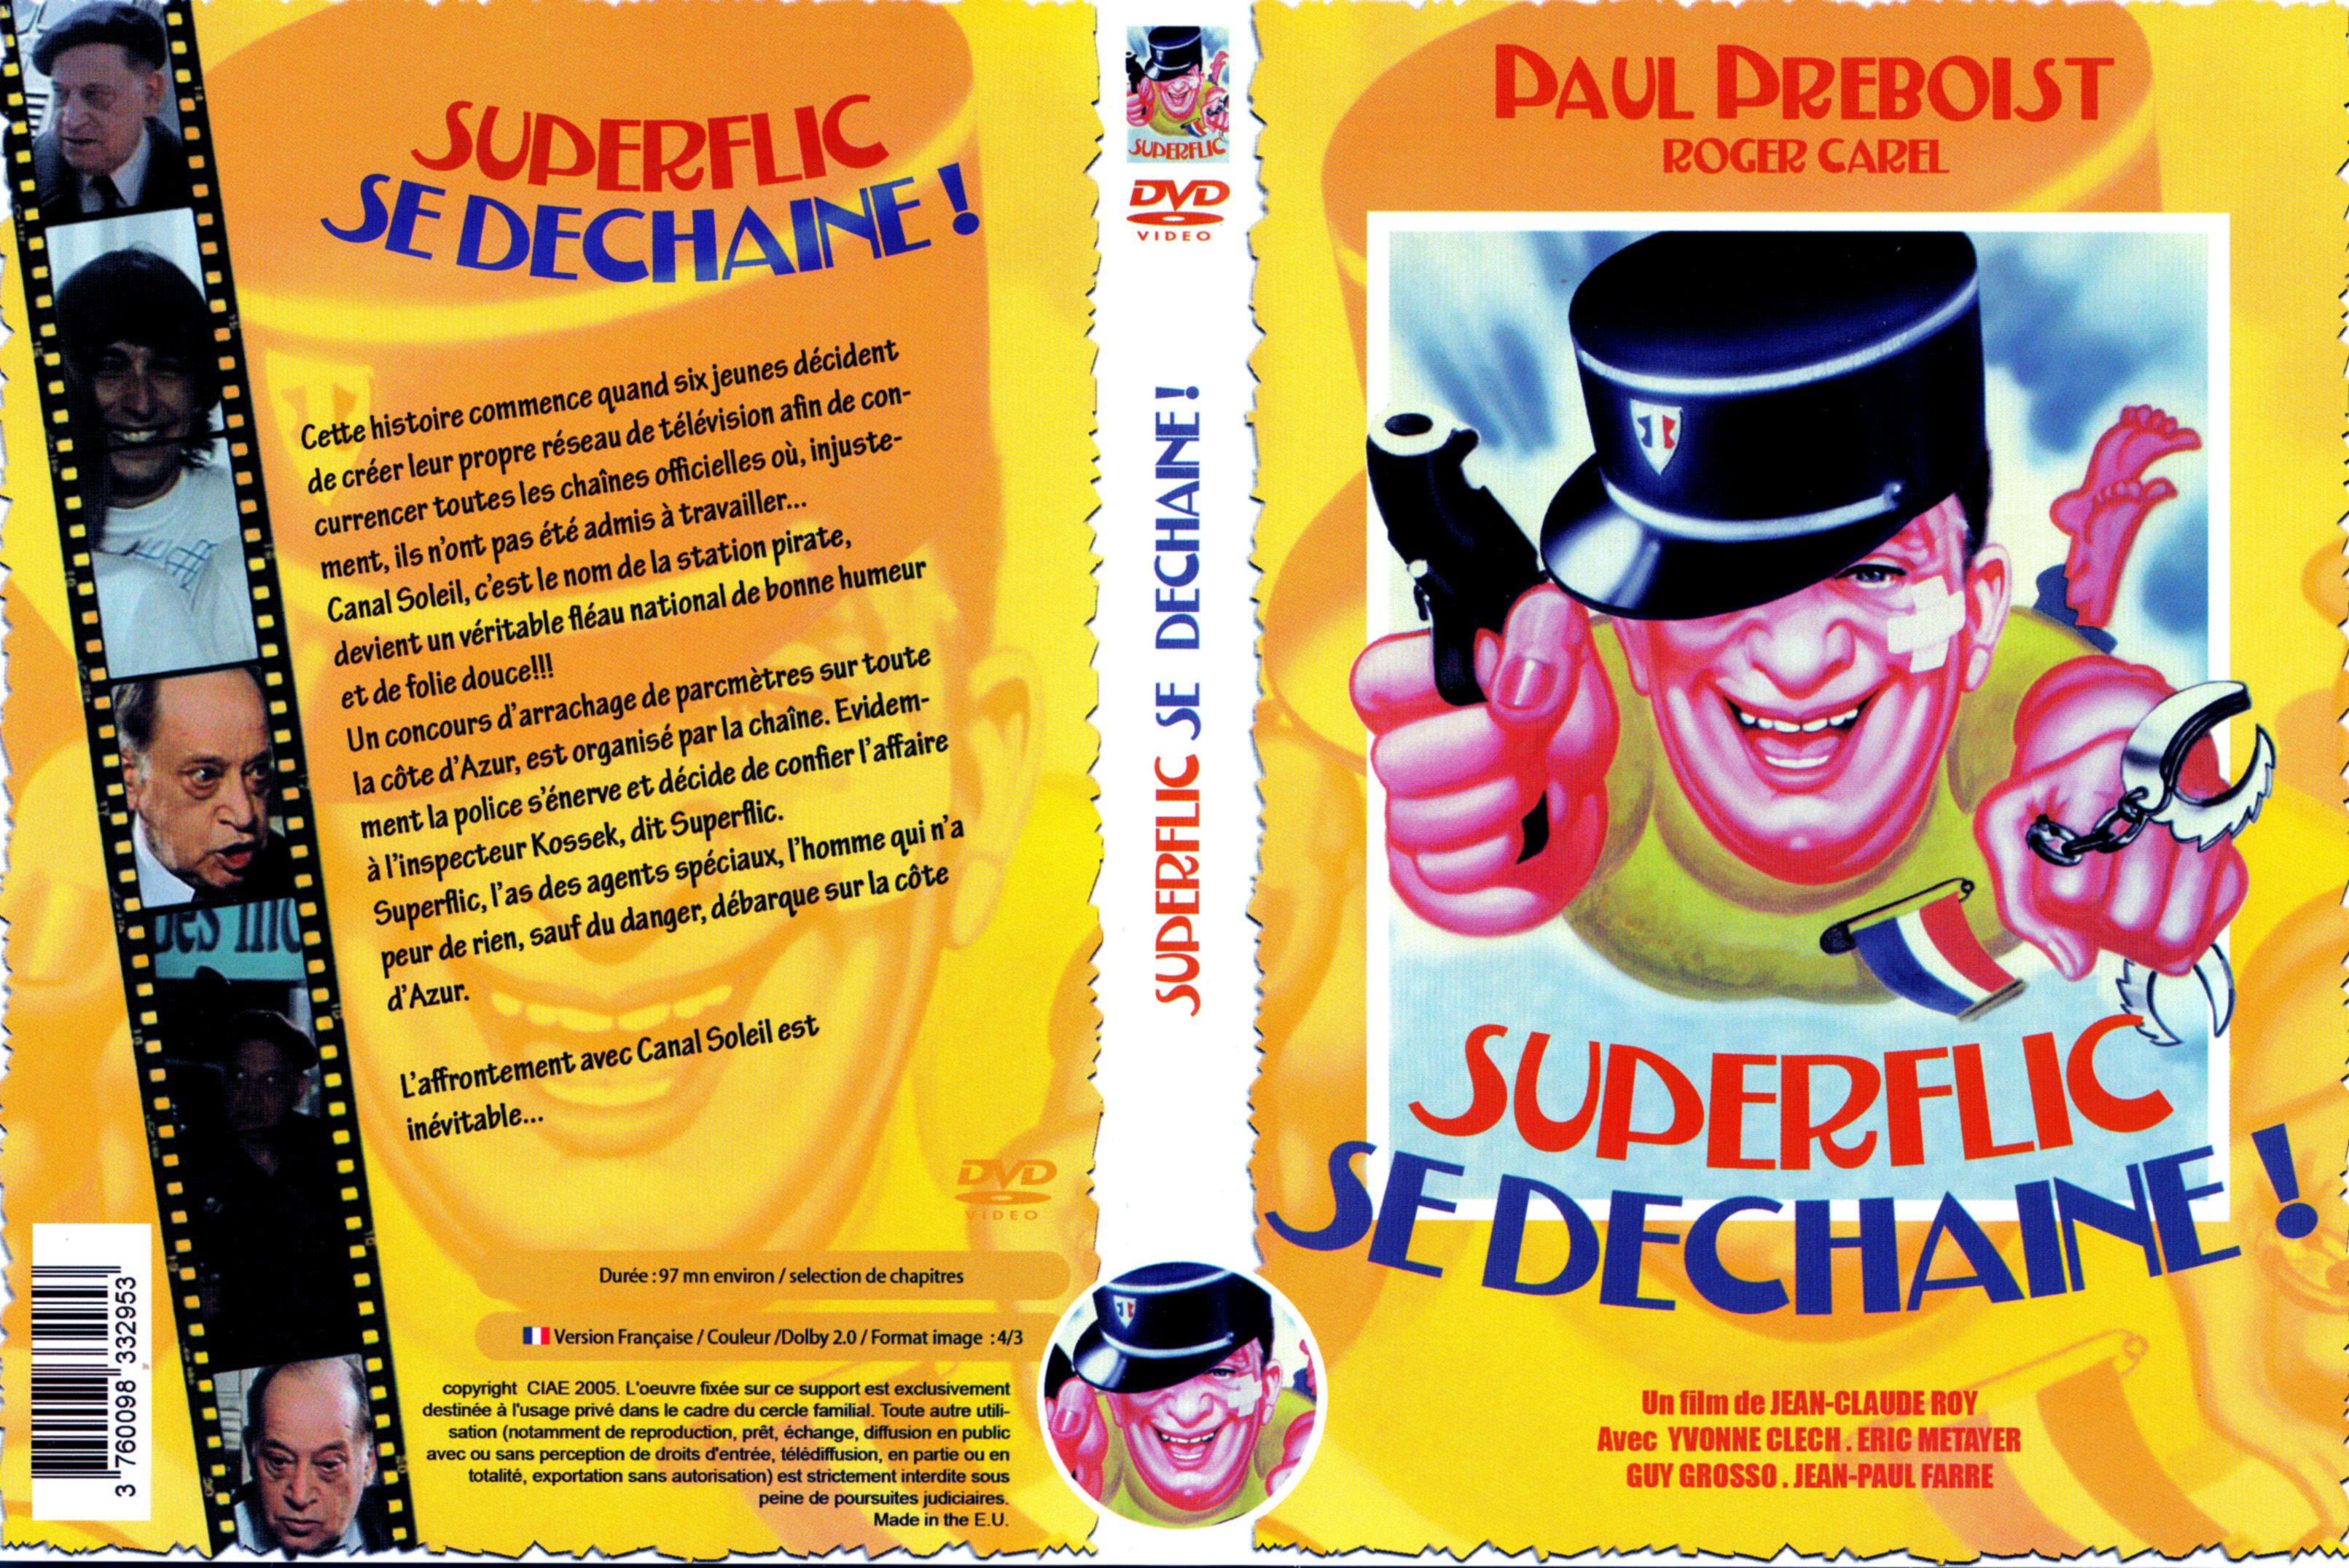 Jaquette DVD Superflic se dchaine